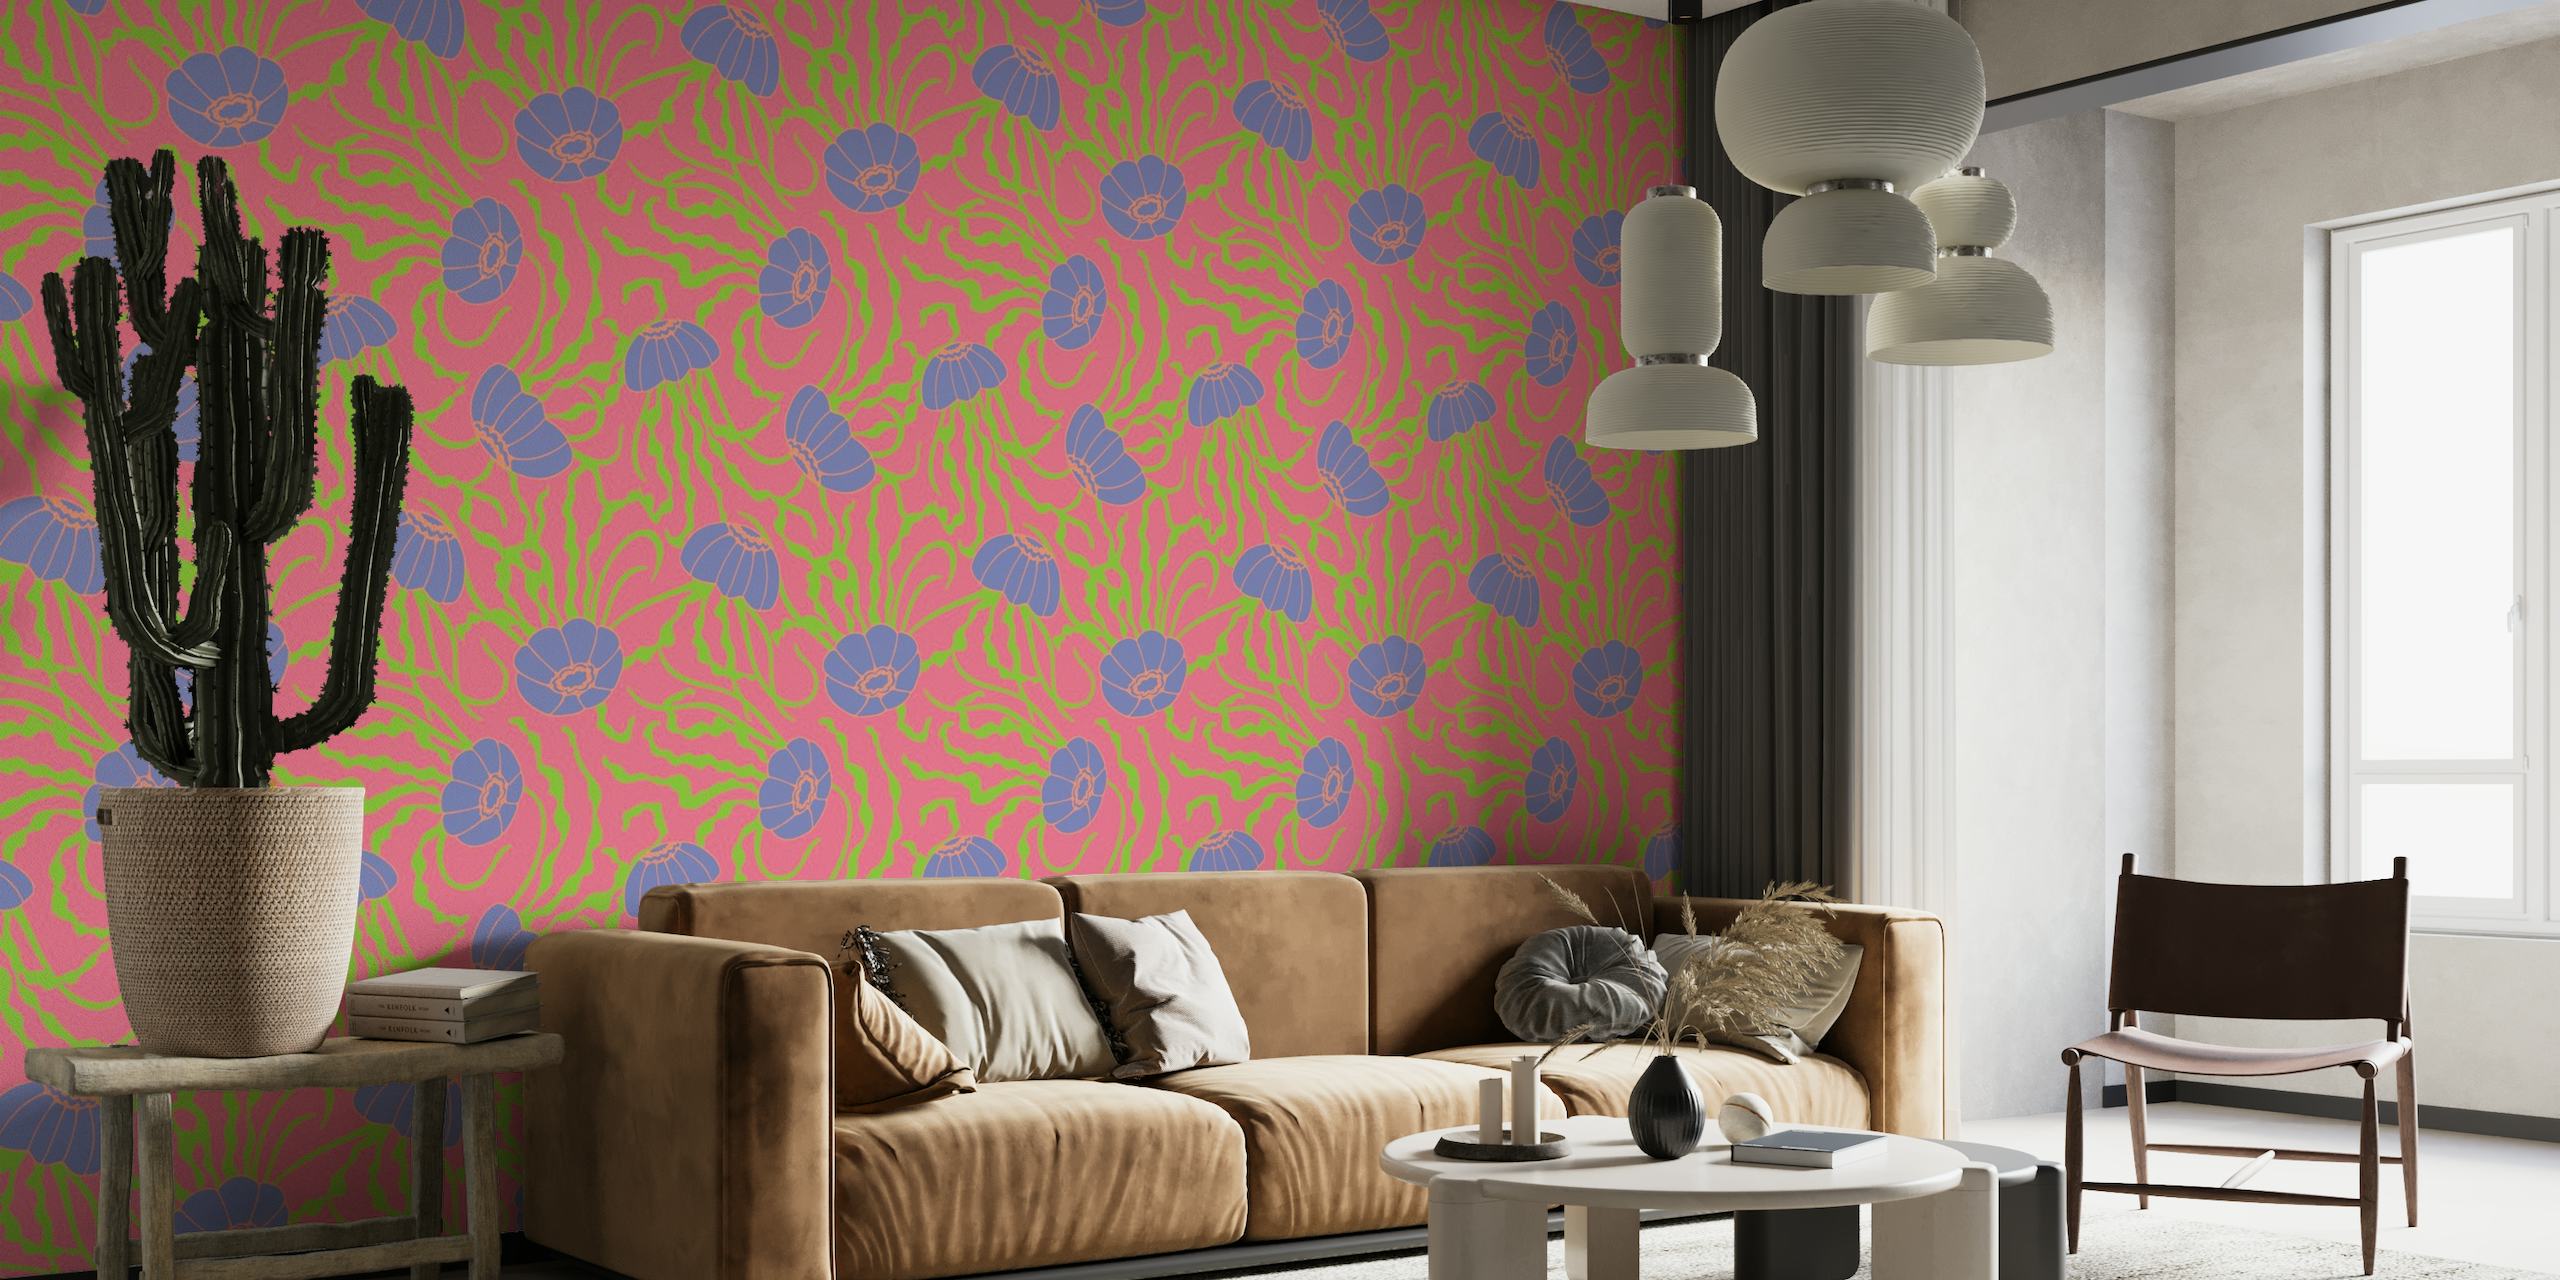 Grazioso motivo di meduse viola su una parete con sfondo rosa corallo.